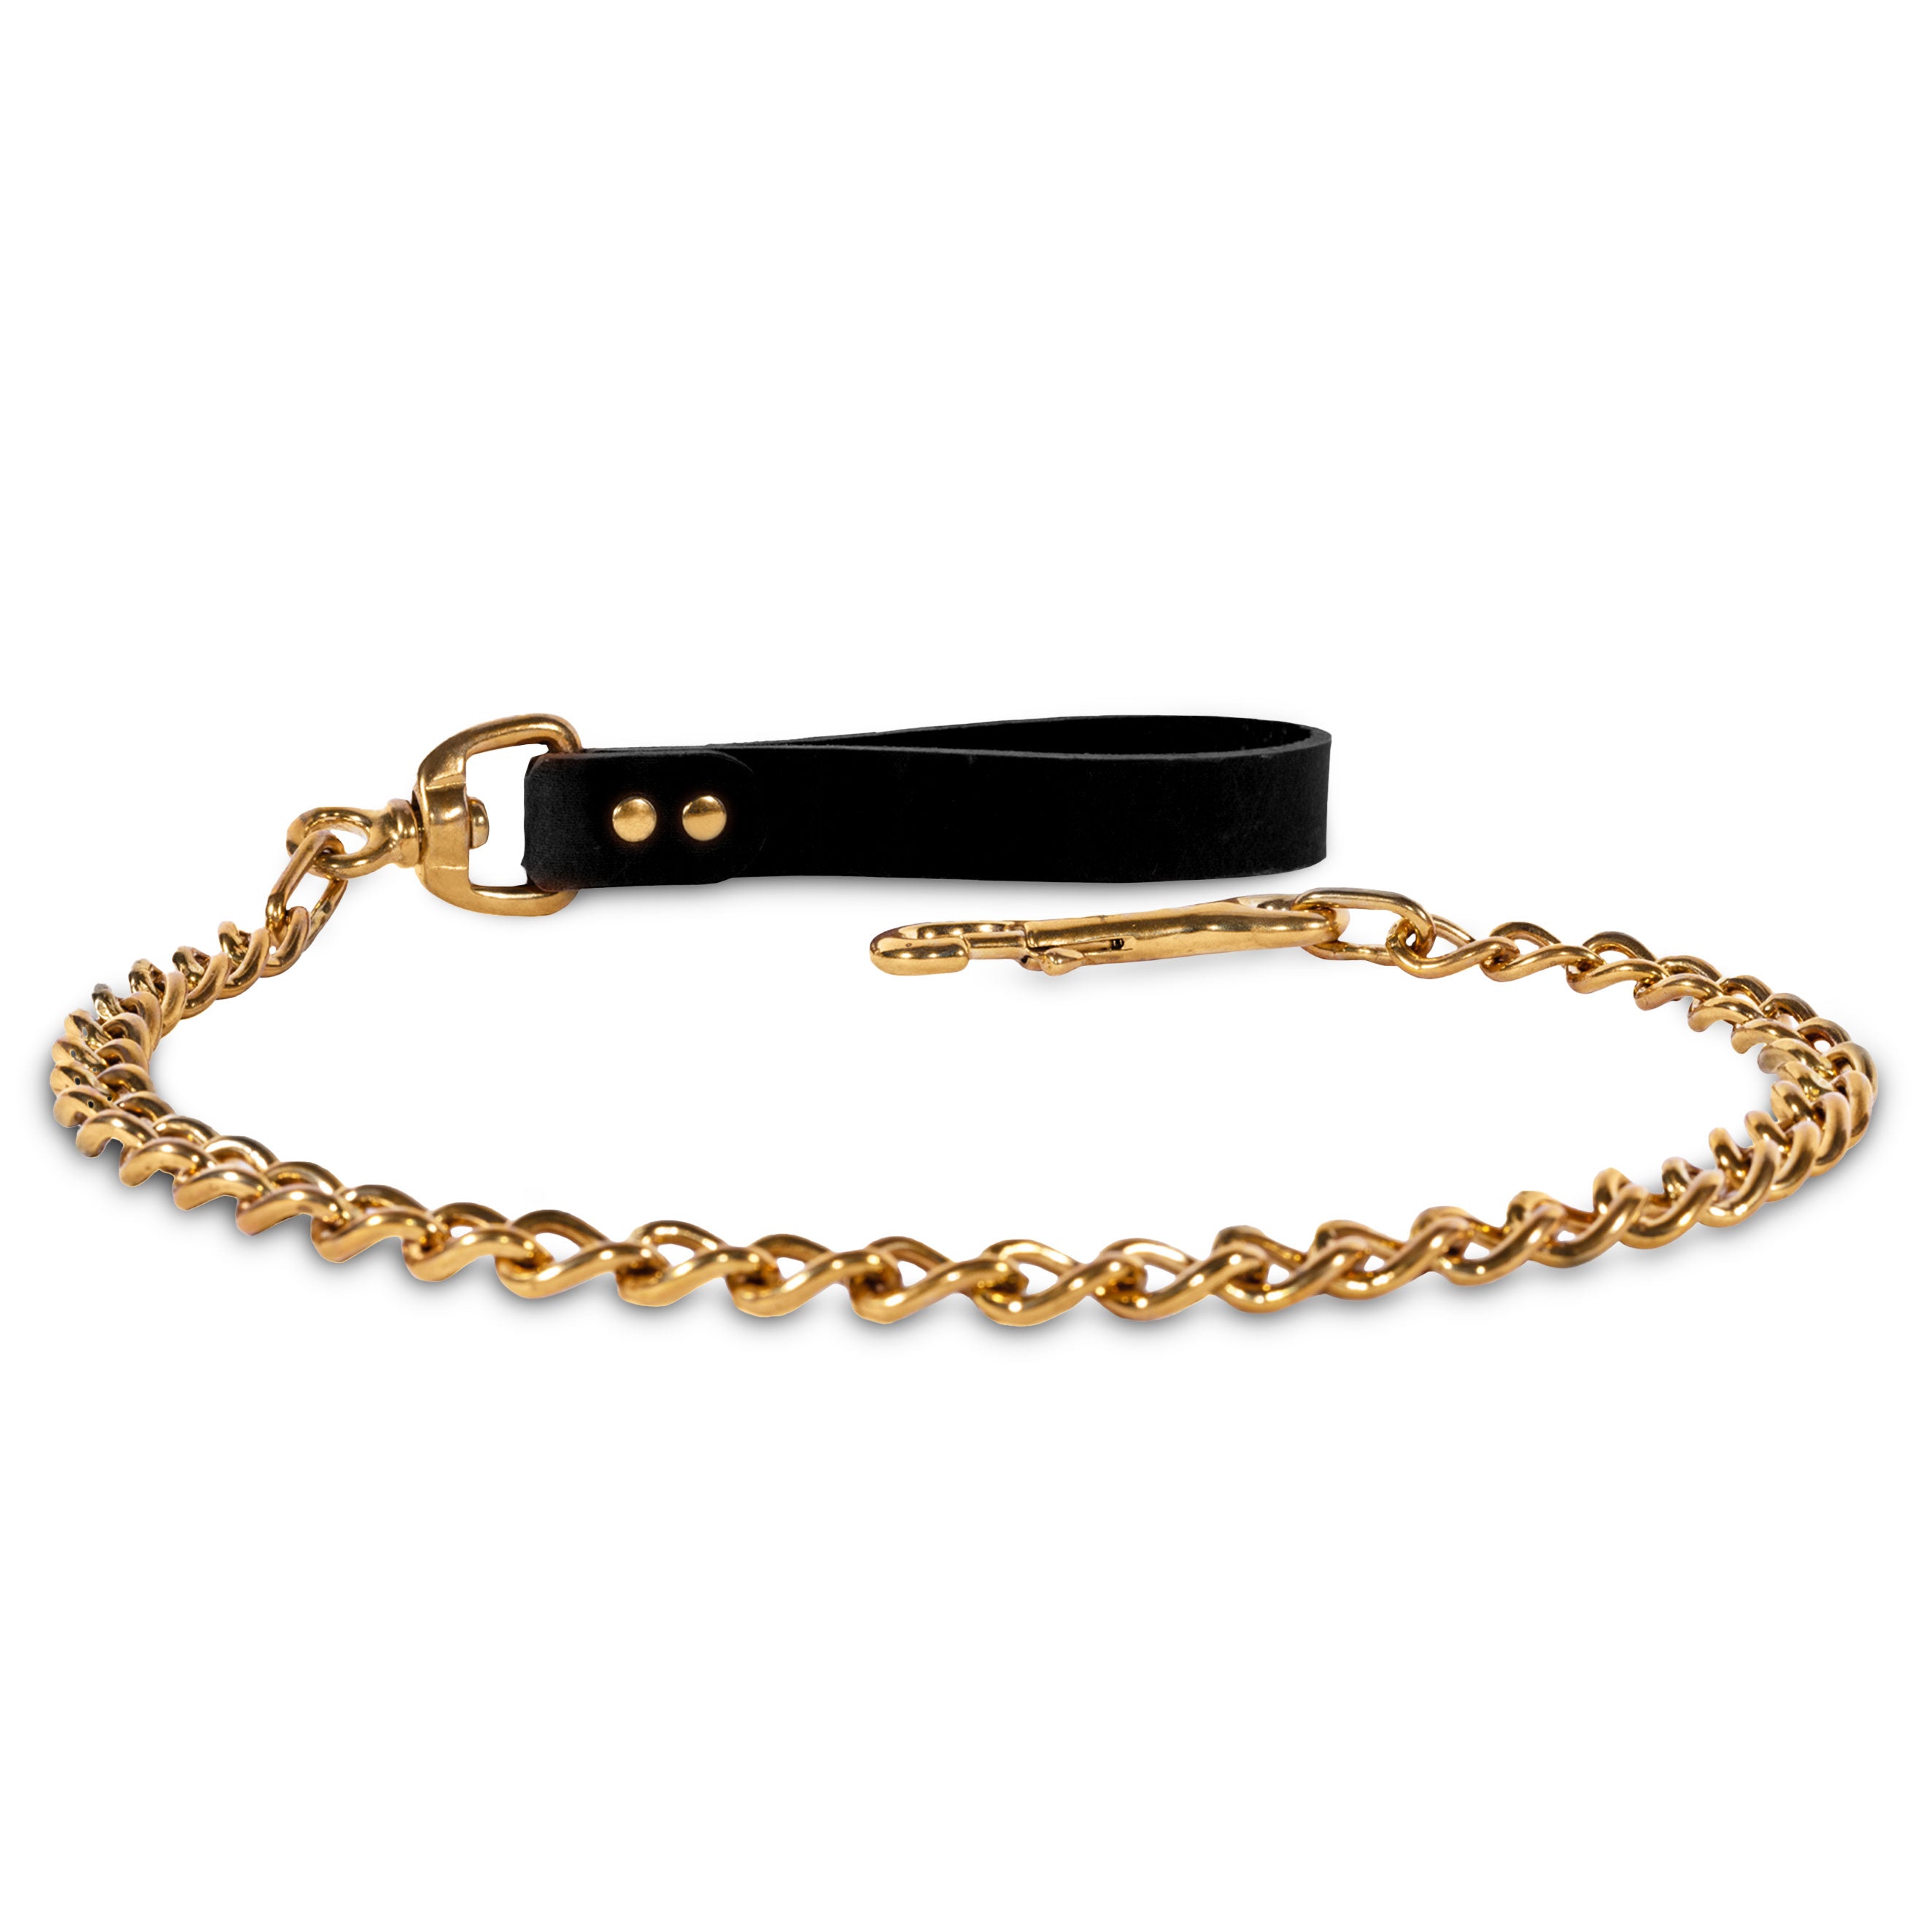 Luxury Nickel-Free Solid Brass BDSM Lead Black Leather Hand Loop